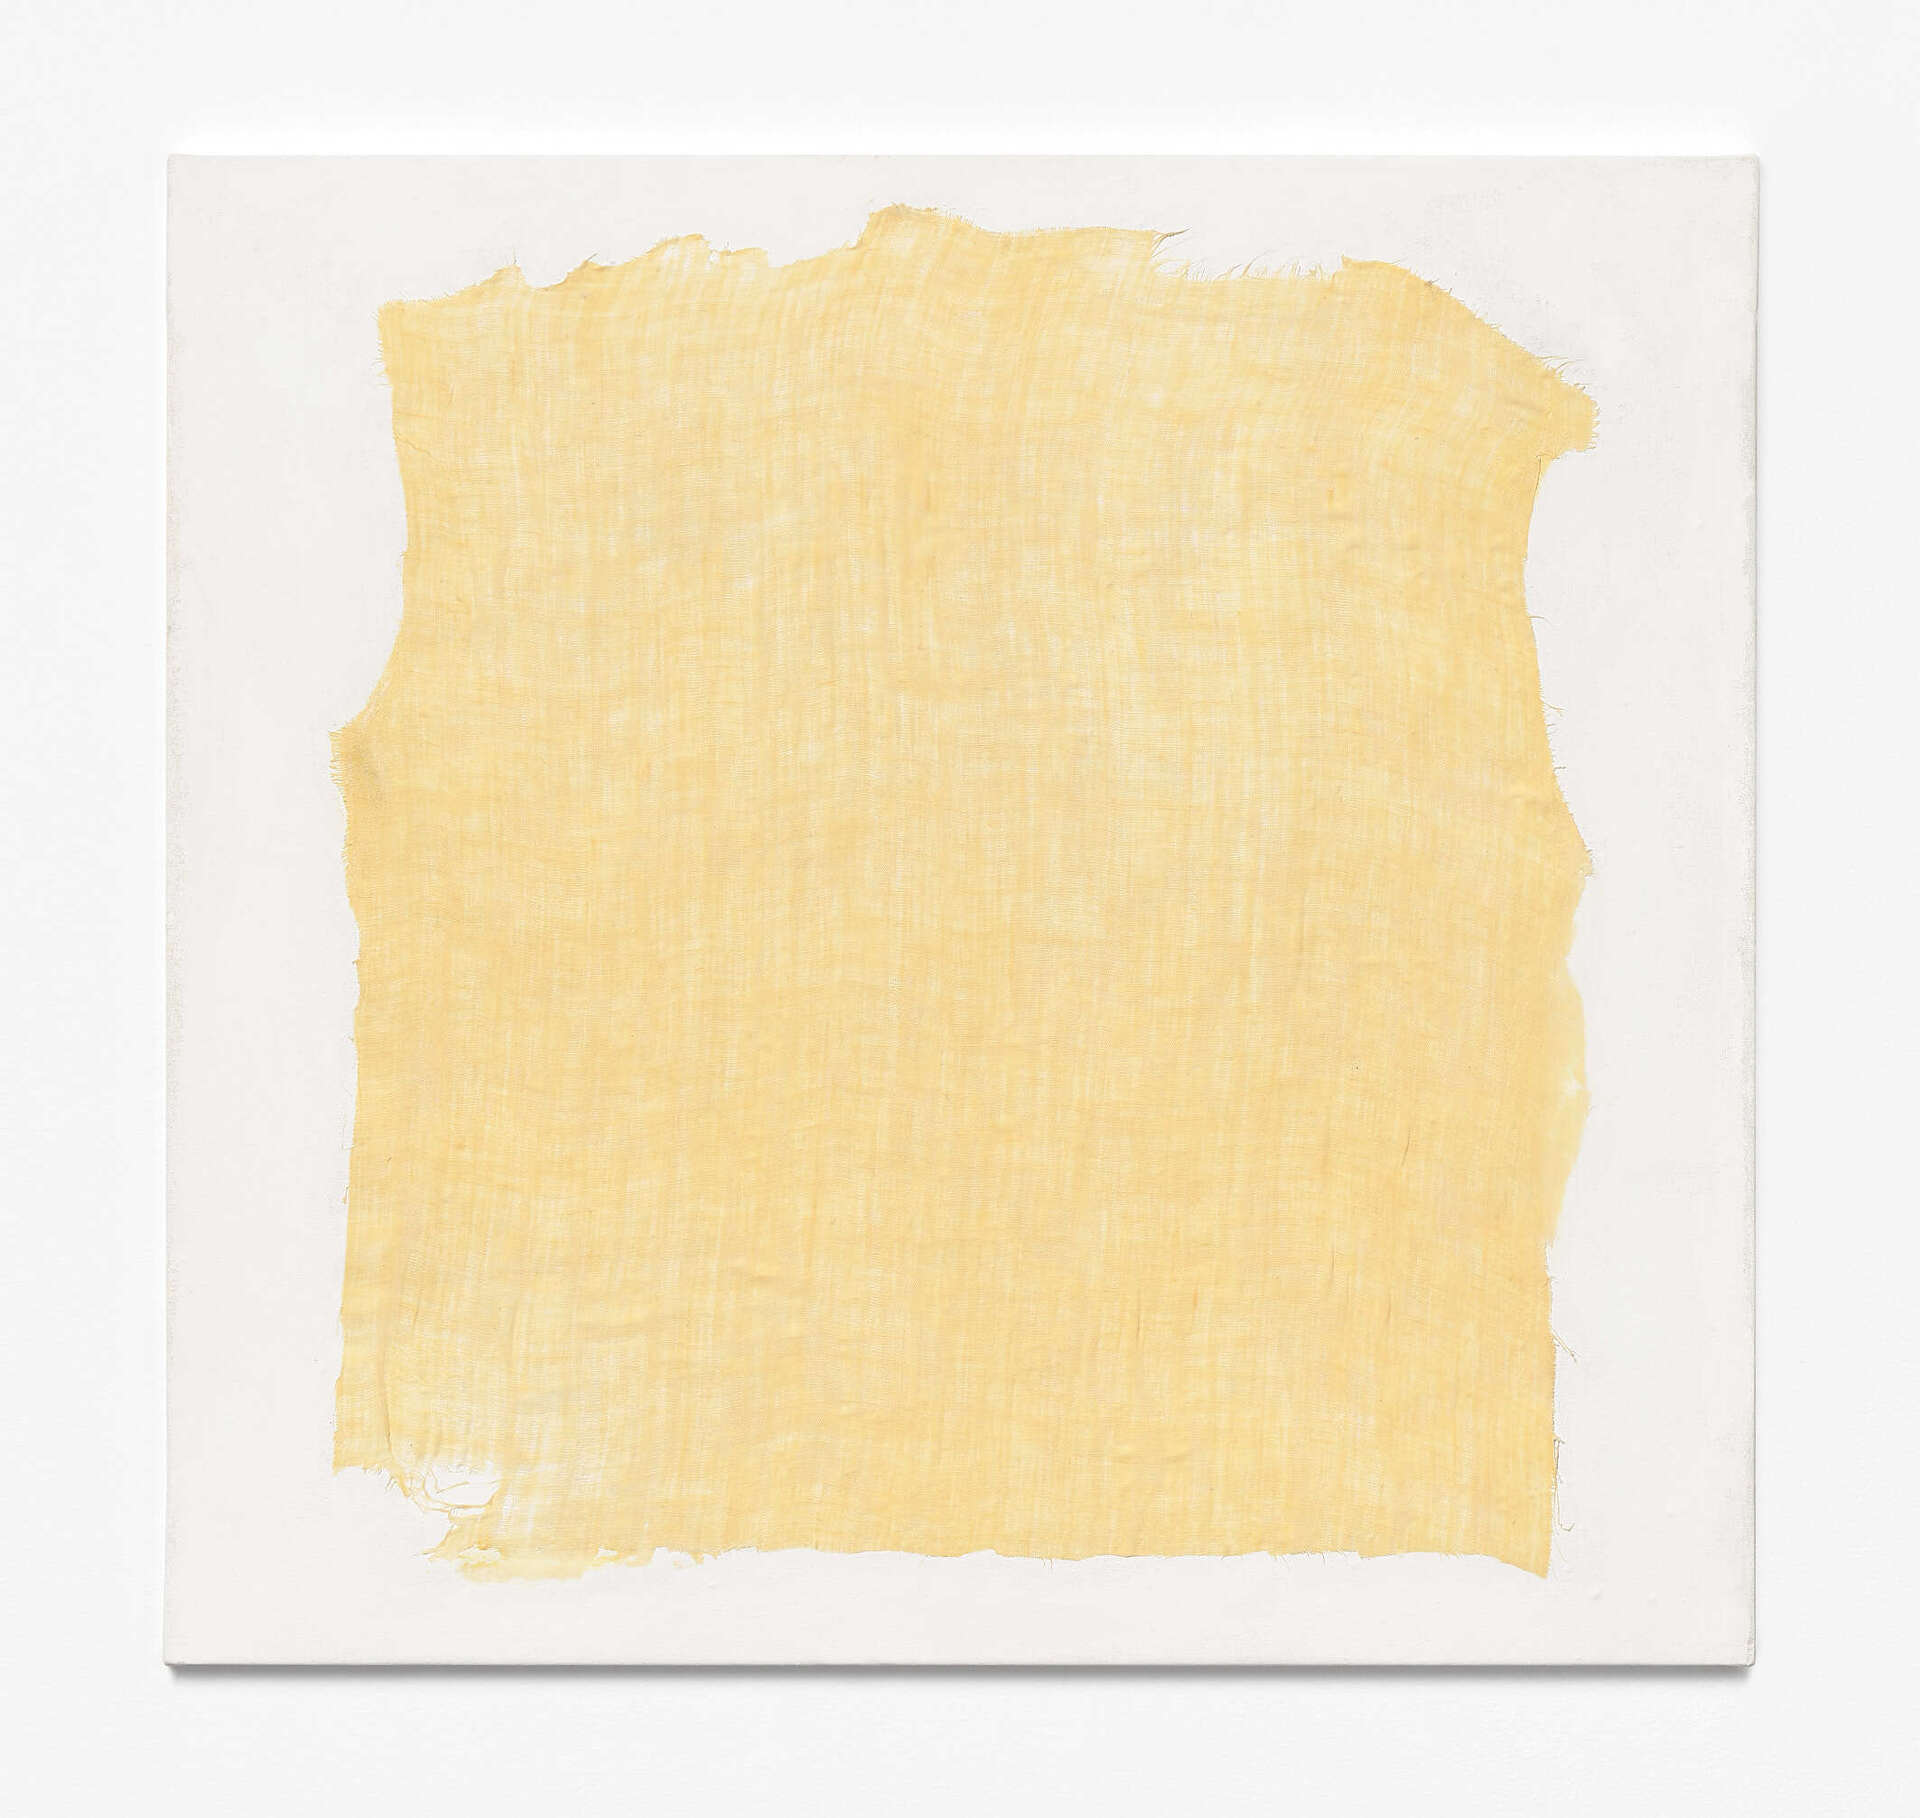 Allan Rand, Sun vest, 2021, Acrylic, linen, glue, chalk pastel, gesso on cotton, 68 x 64 x 1.2 cm.